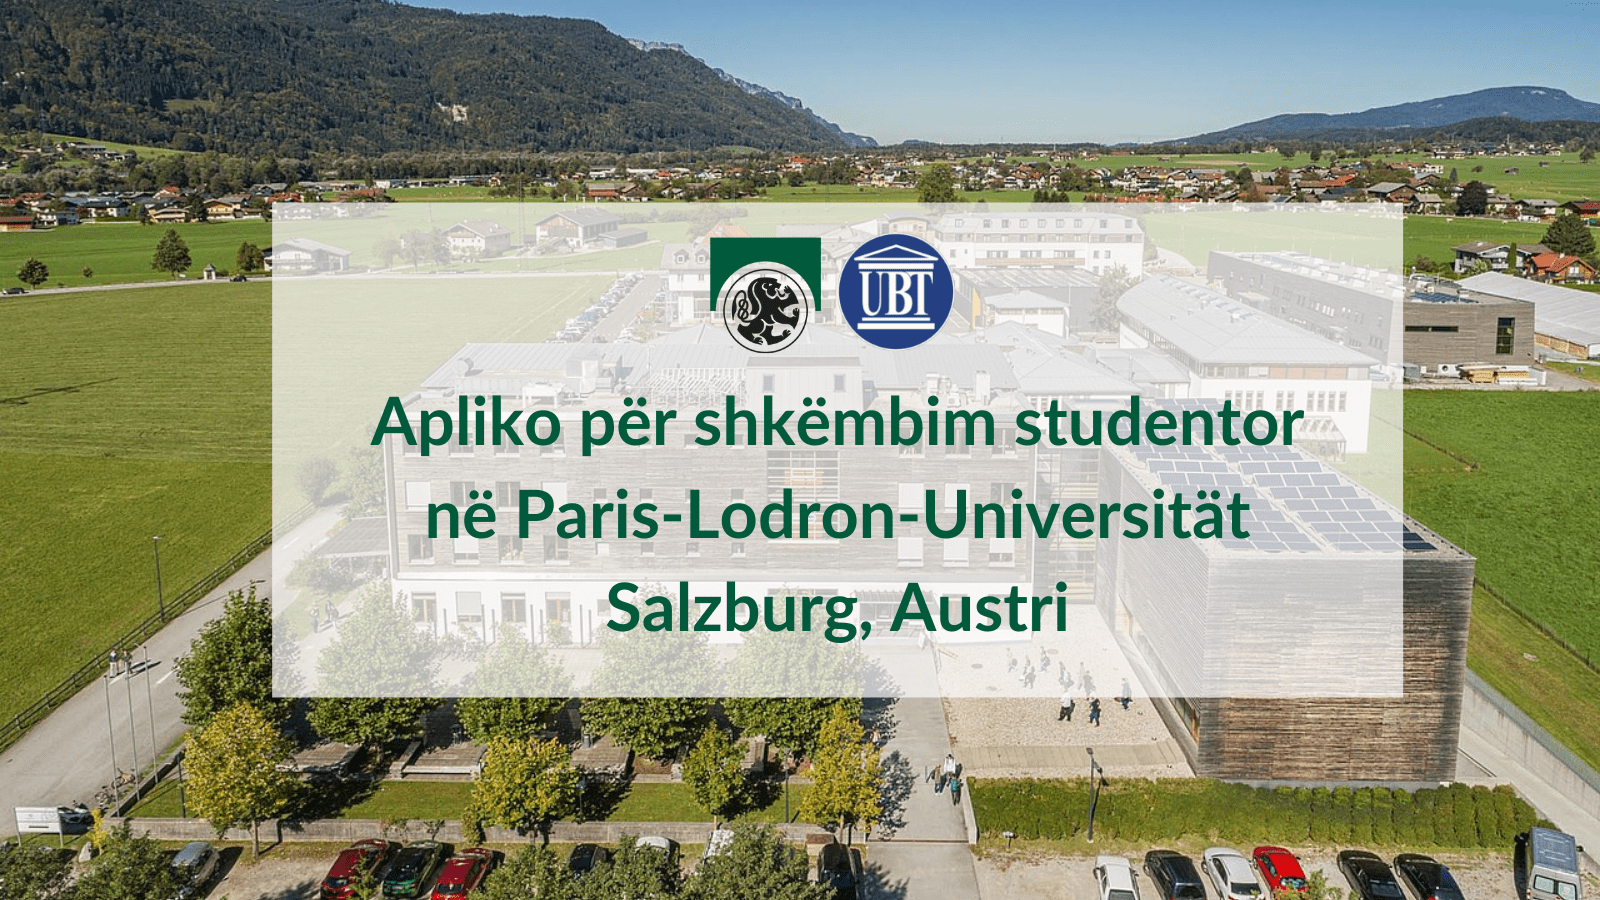 UBT shpall të hapur thirrjen për shkëmbim studentor në Paris-Lodron-Universität Salzburg